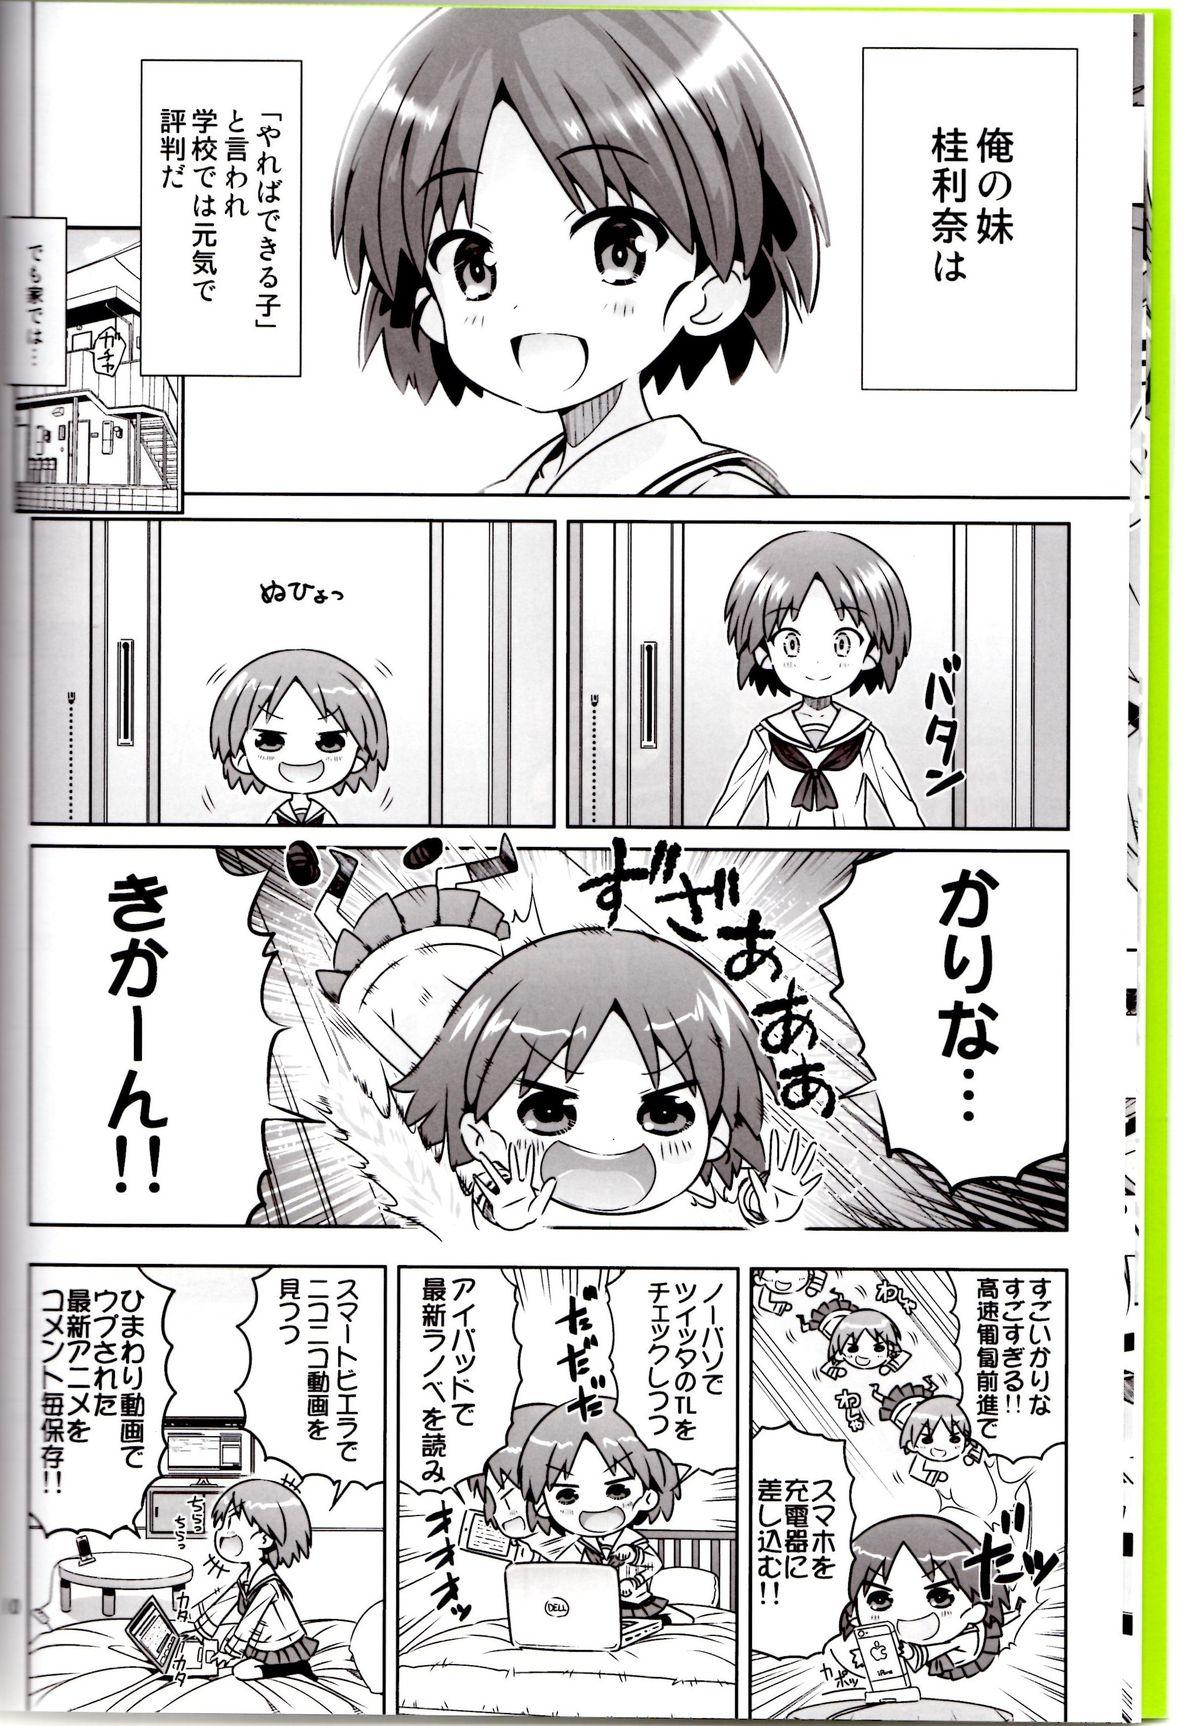 Squirters "AV Shutsuen, Ganbarimasu!!" Ichinensei wa, M-ji Kaikyaku 3 Peace desu! - Girls und panzer Dutch - Page 7